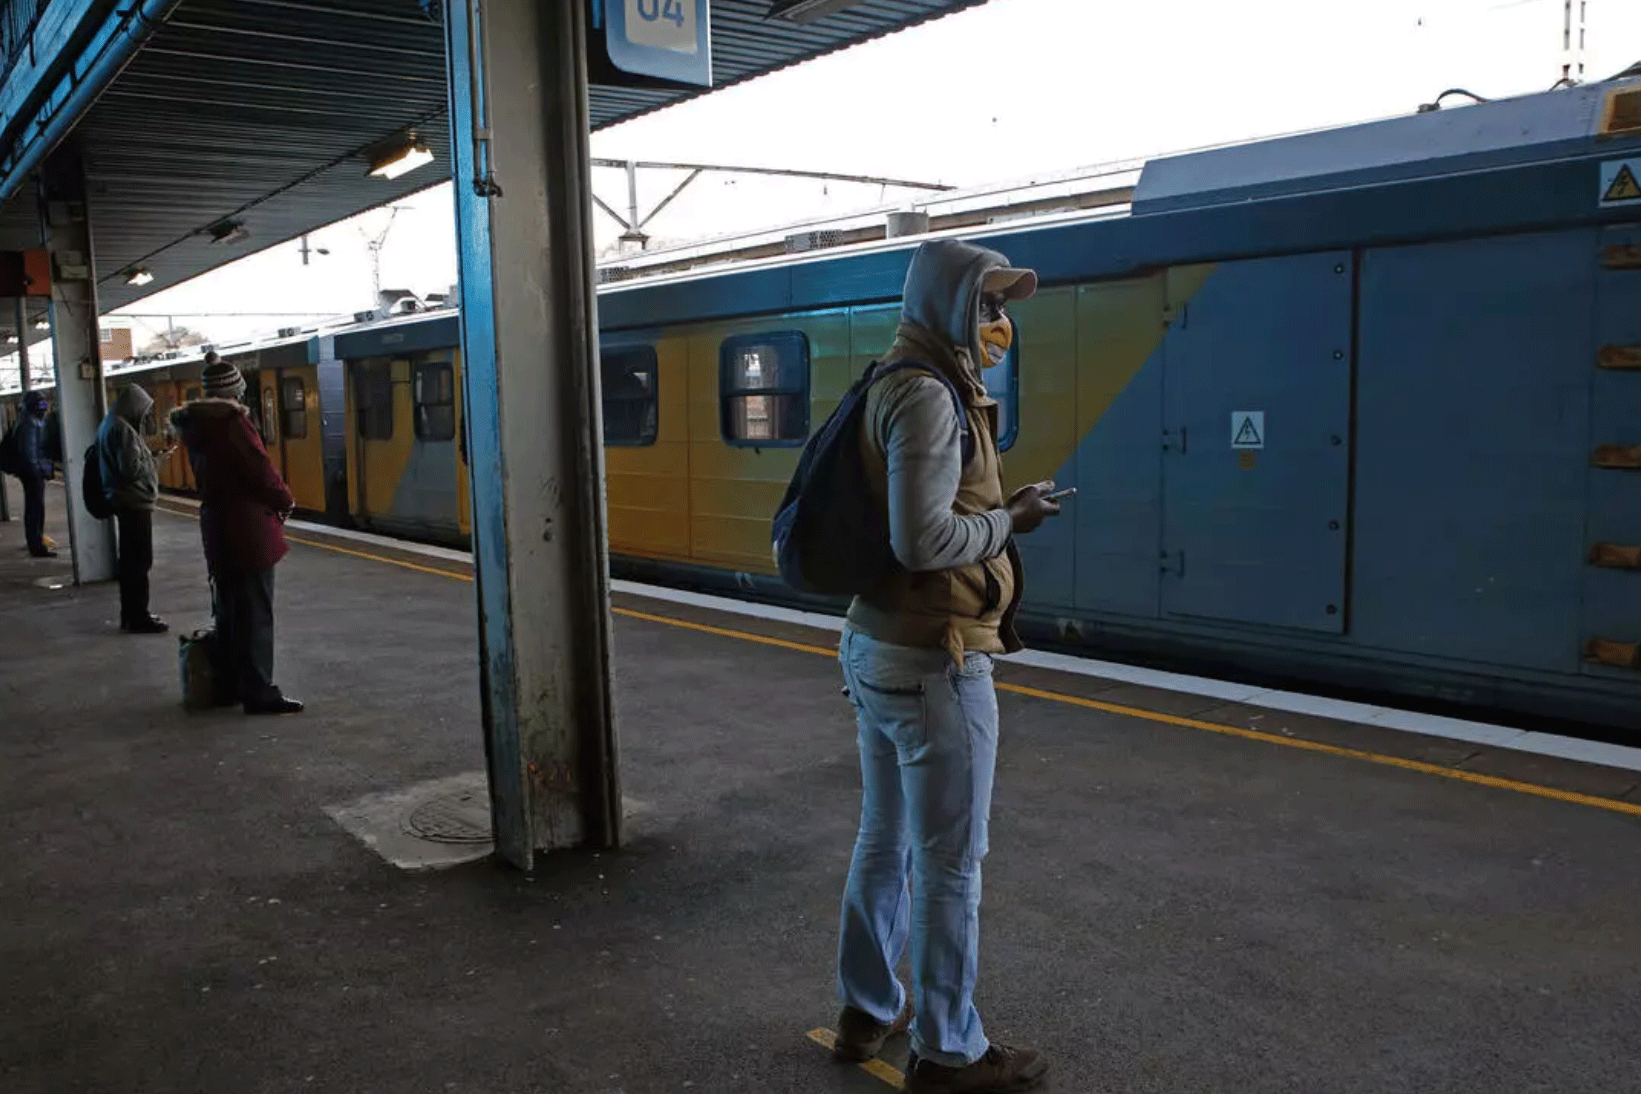 التباعد الاجتماعي في محطة للقطارات في جنوب أفريقيا، التي سجلت أكبر عدد من الإصابات بكورونا في القارة السمراء